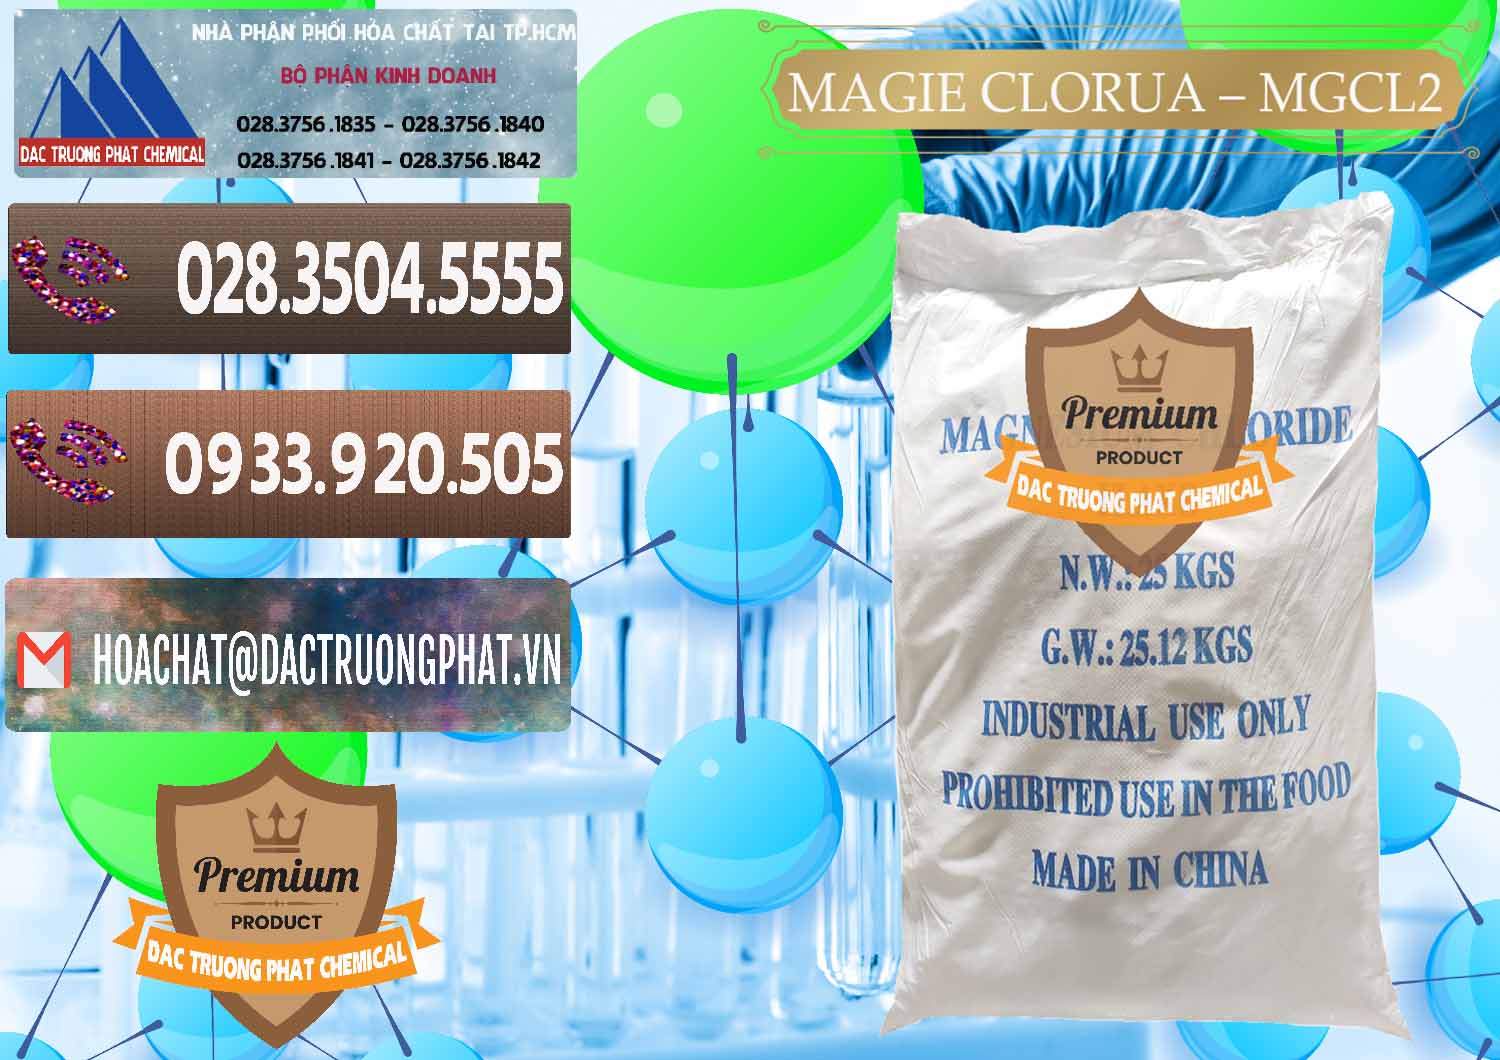 Nơi chuyên bán ( cung ứng ) Magie Clorua – MGCL2 96% Dạng Vảy Trung Quốc China - 0091 - Cty chuyên cung ứng & phân phối hóa chất tại TP.HCM - hoachatviet.net